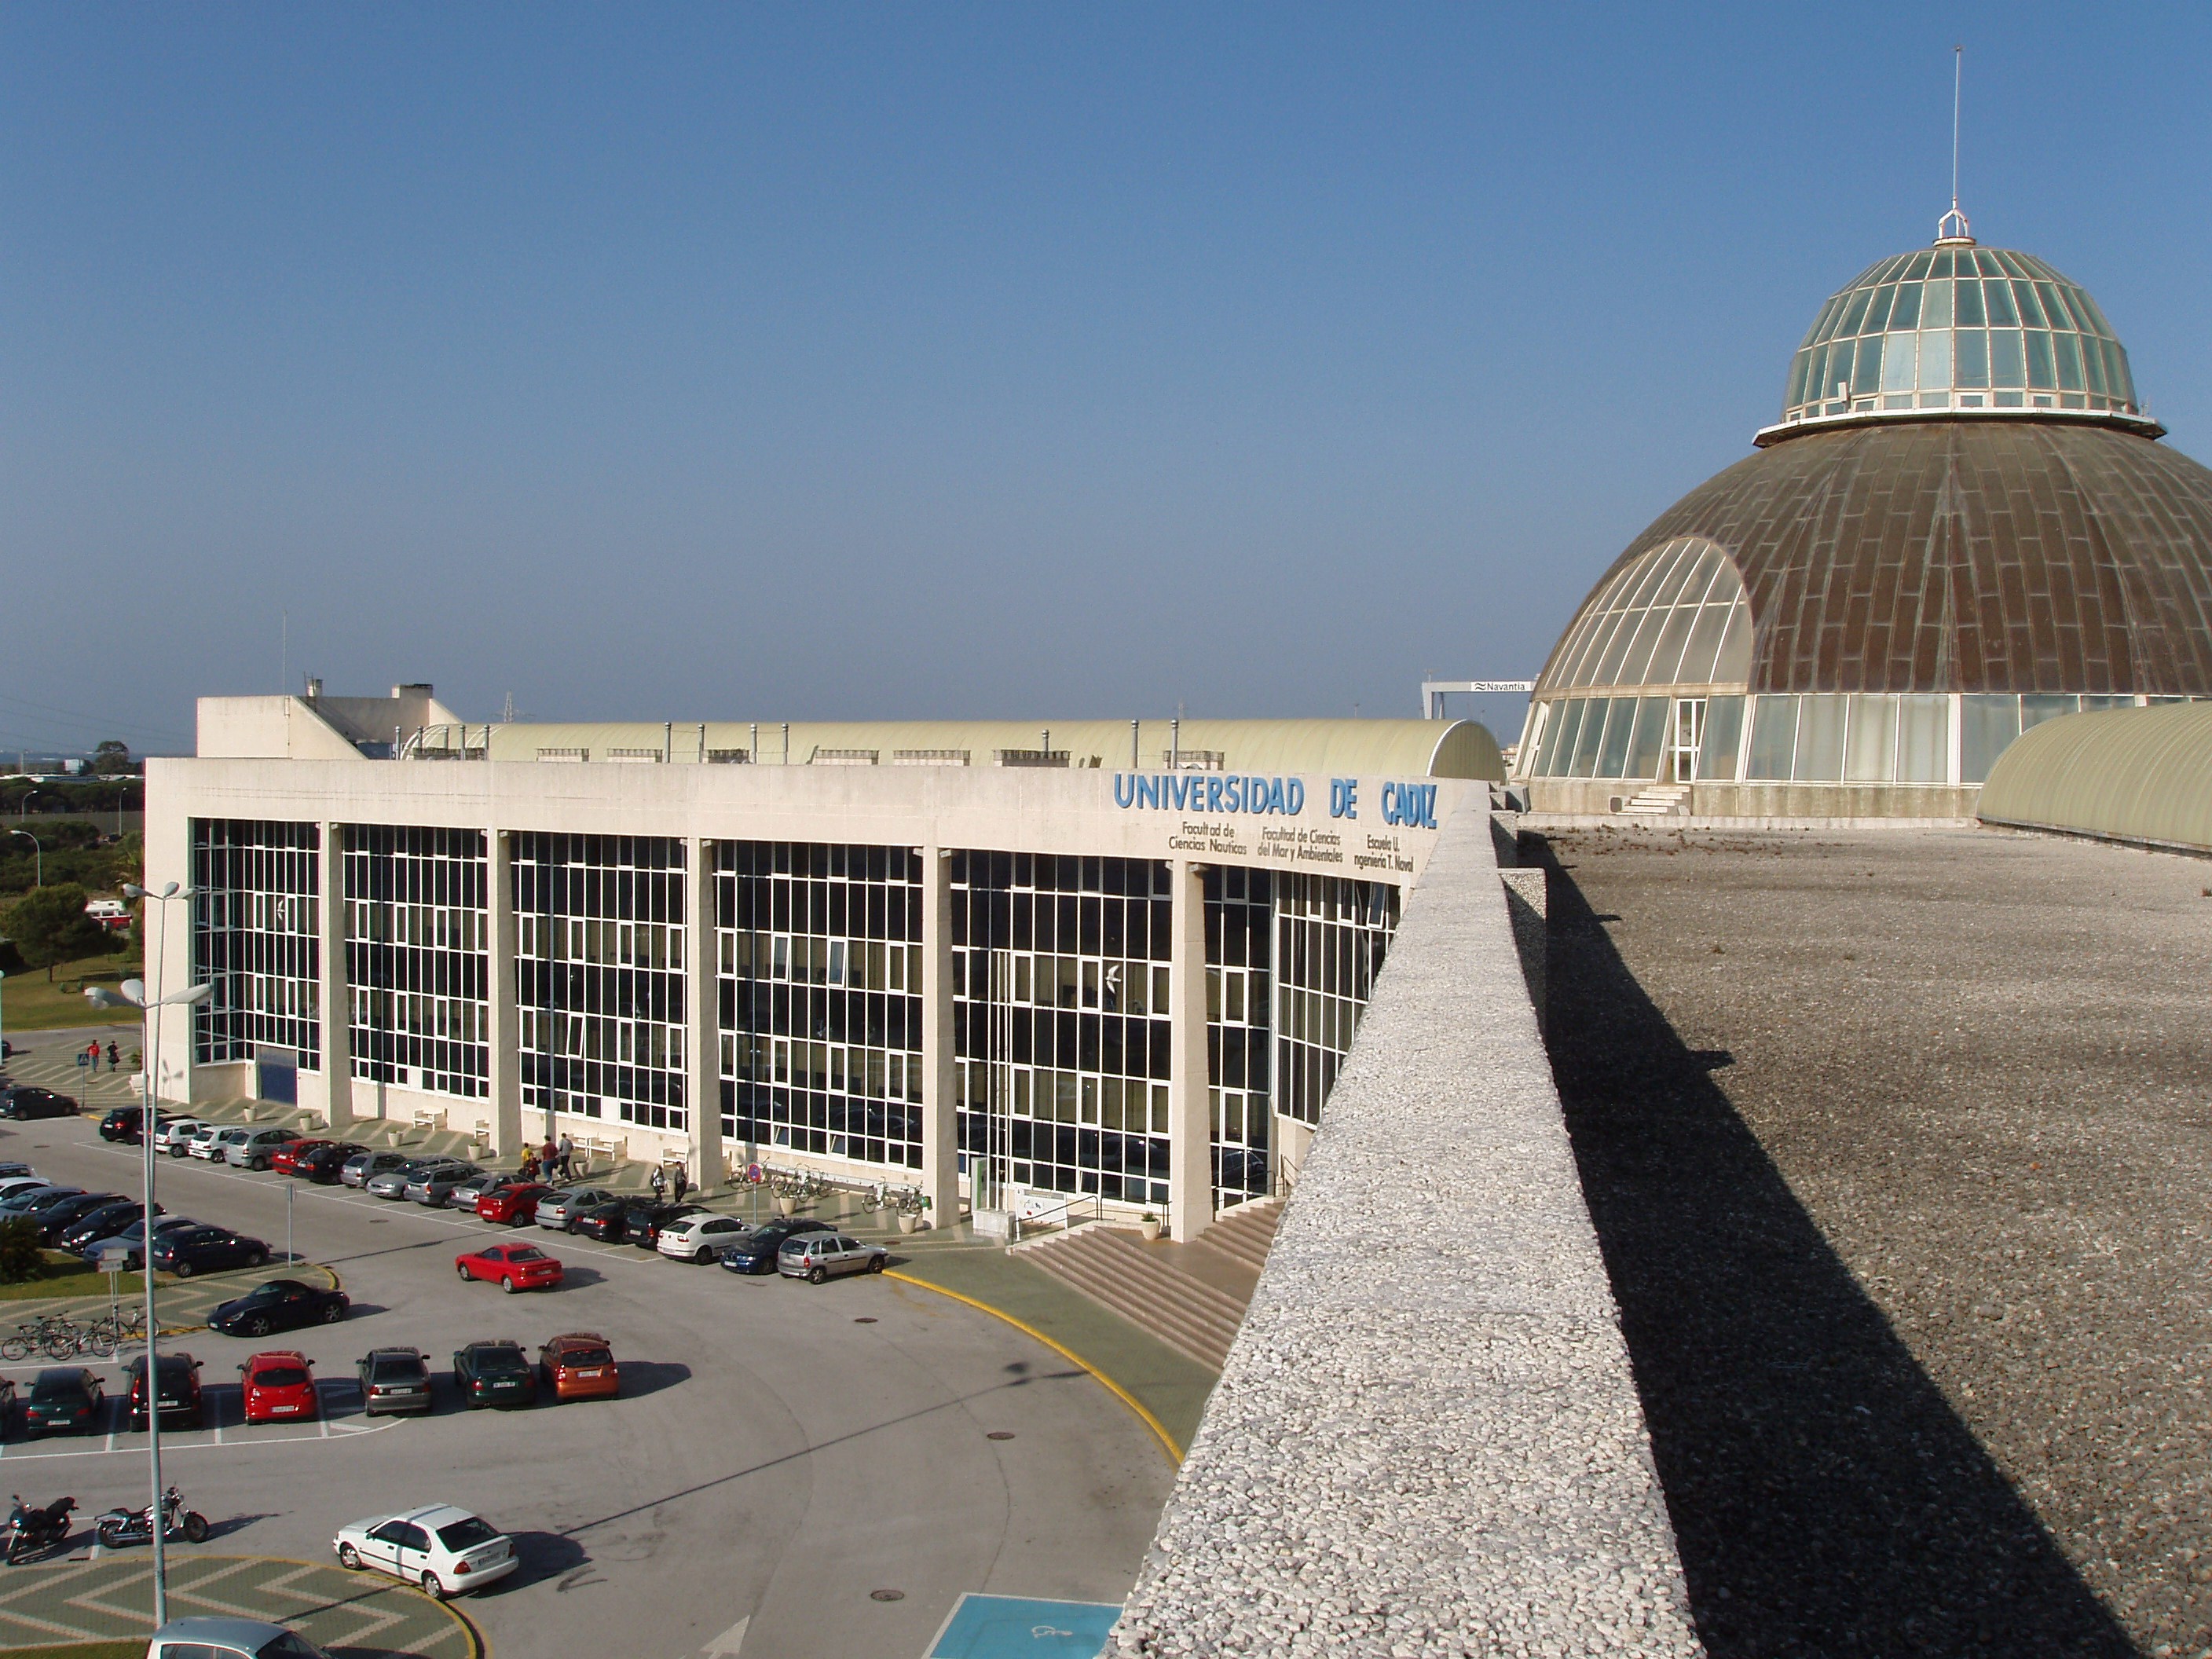 error huella por otra parte, File:Azotea CASEM Campus de Puerto Real.jpg - Wikimedia Commons